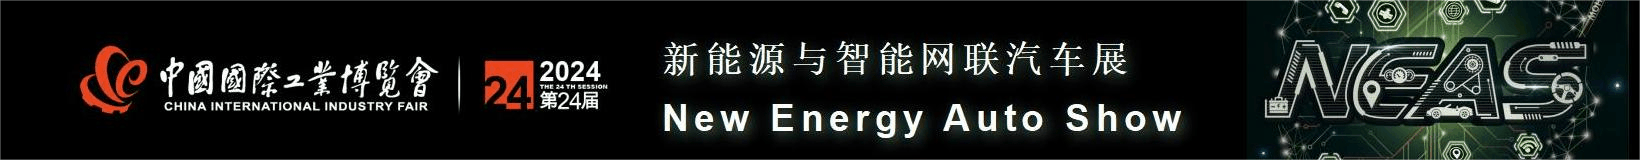 2024中国国际工业博览会新能源与智能网联汽车展